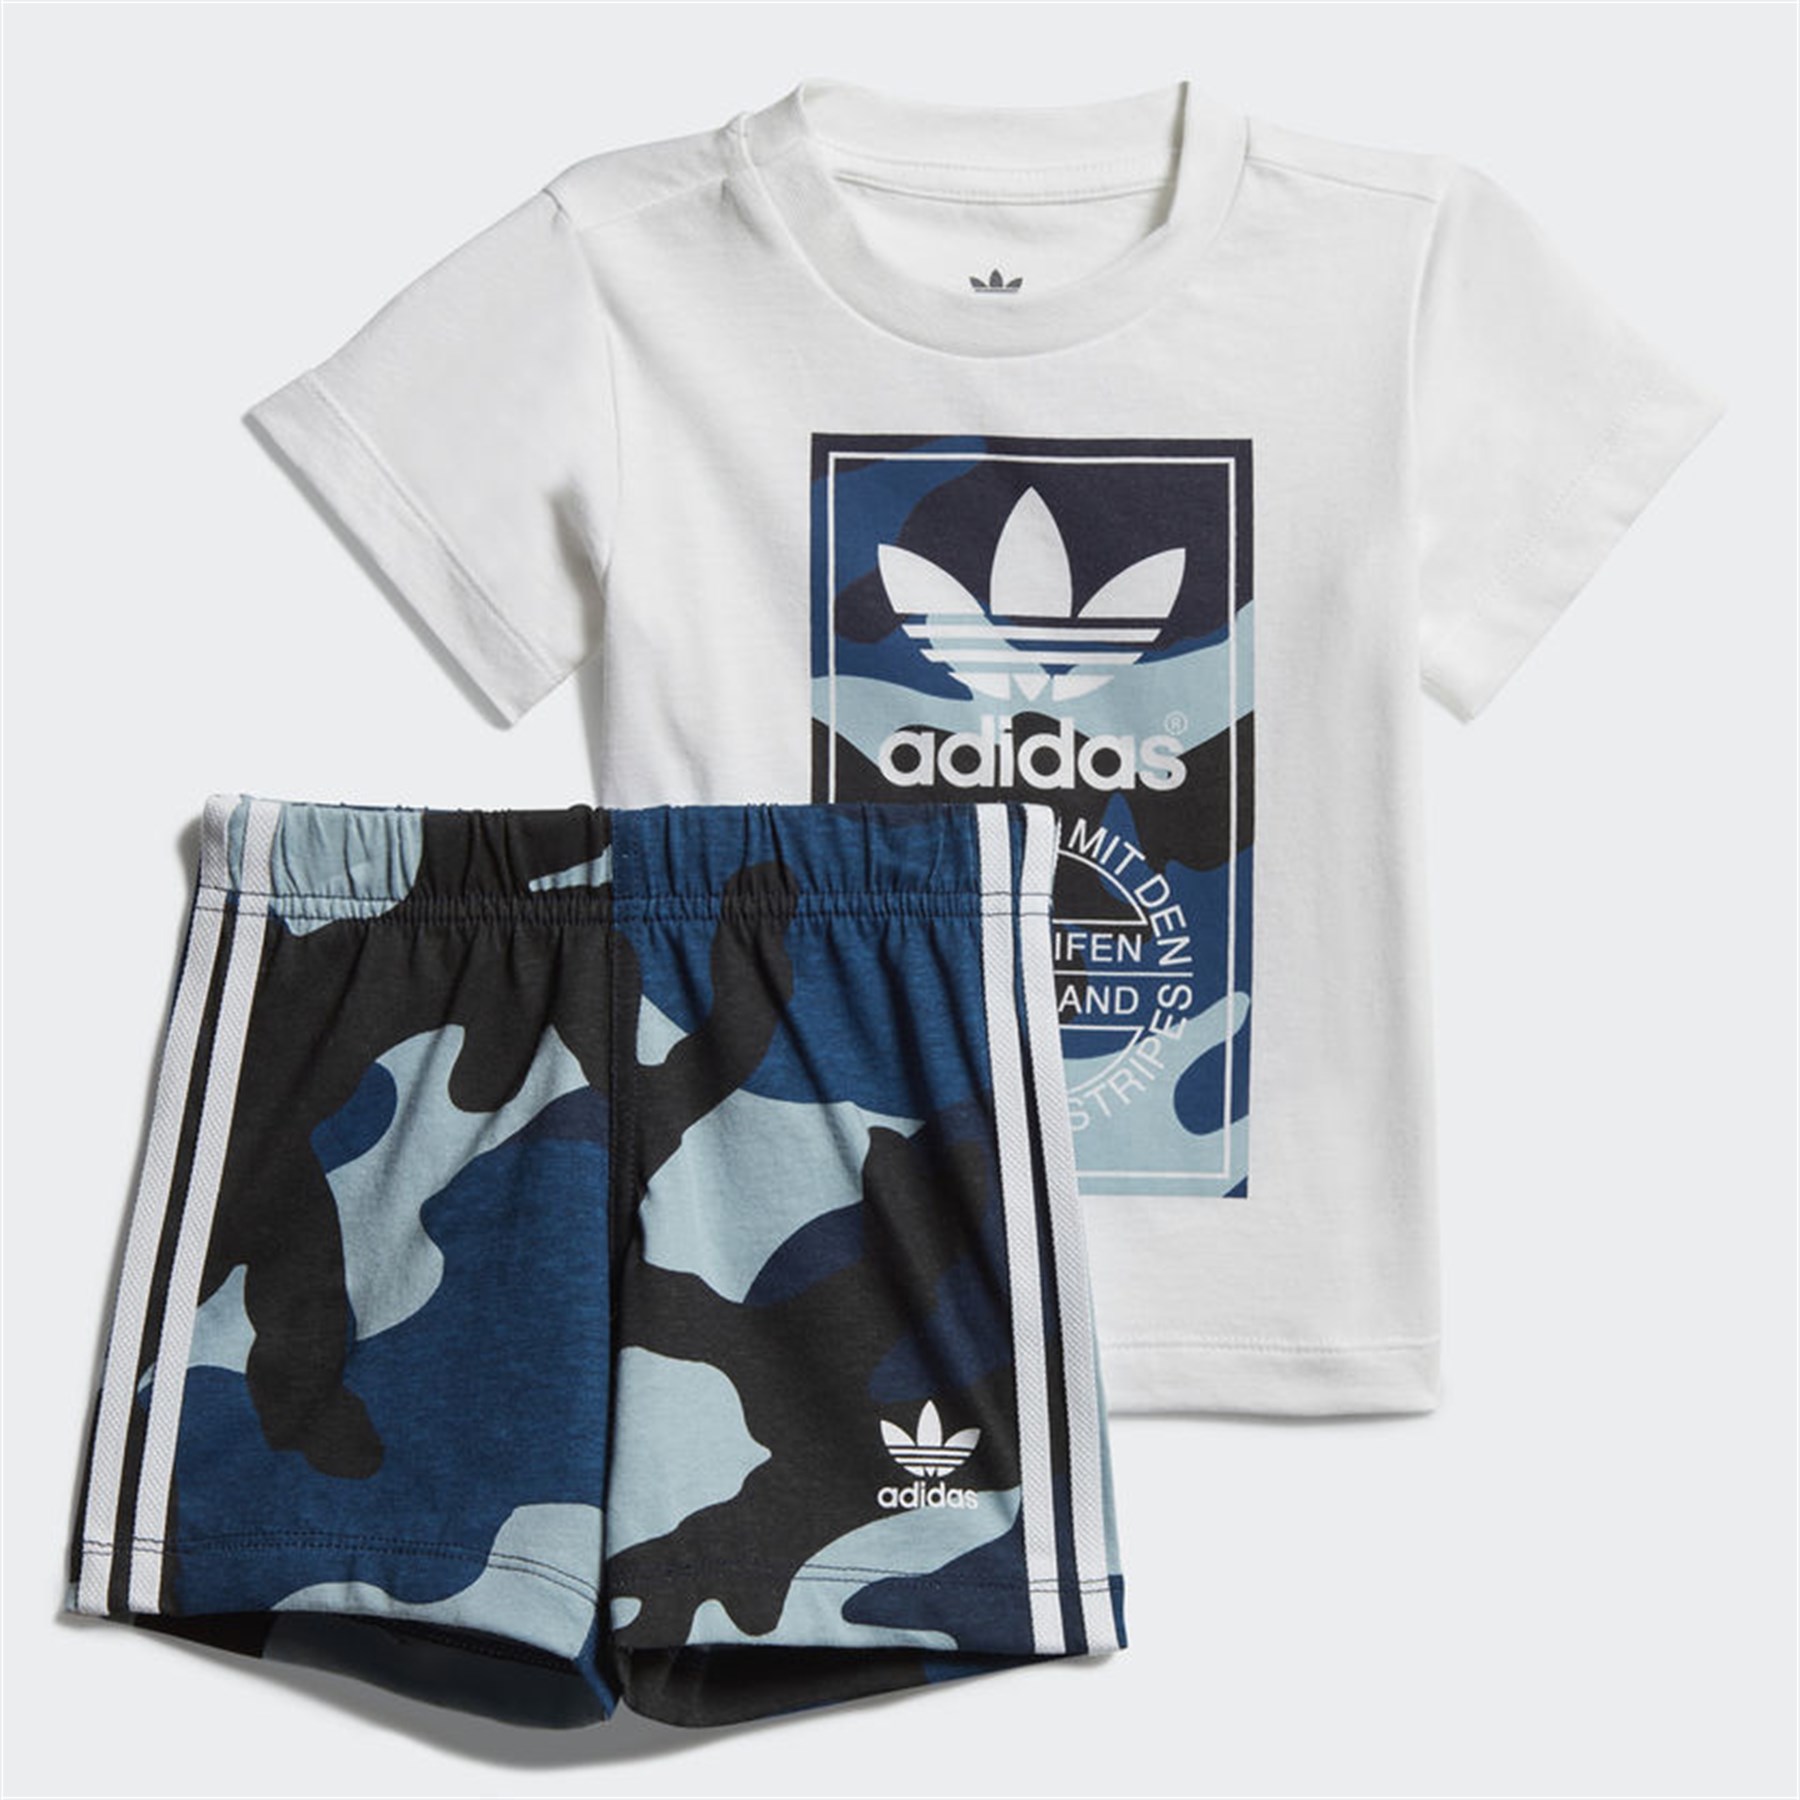 Adidas Bebek Günlük T-Shirt – Şort Takımı Dw3843 Camo Tee Set